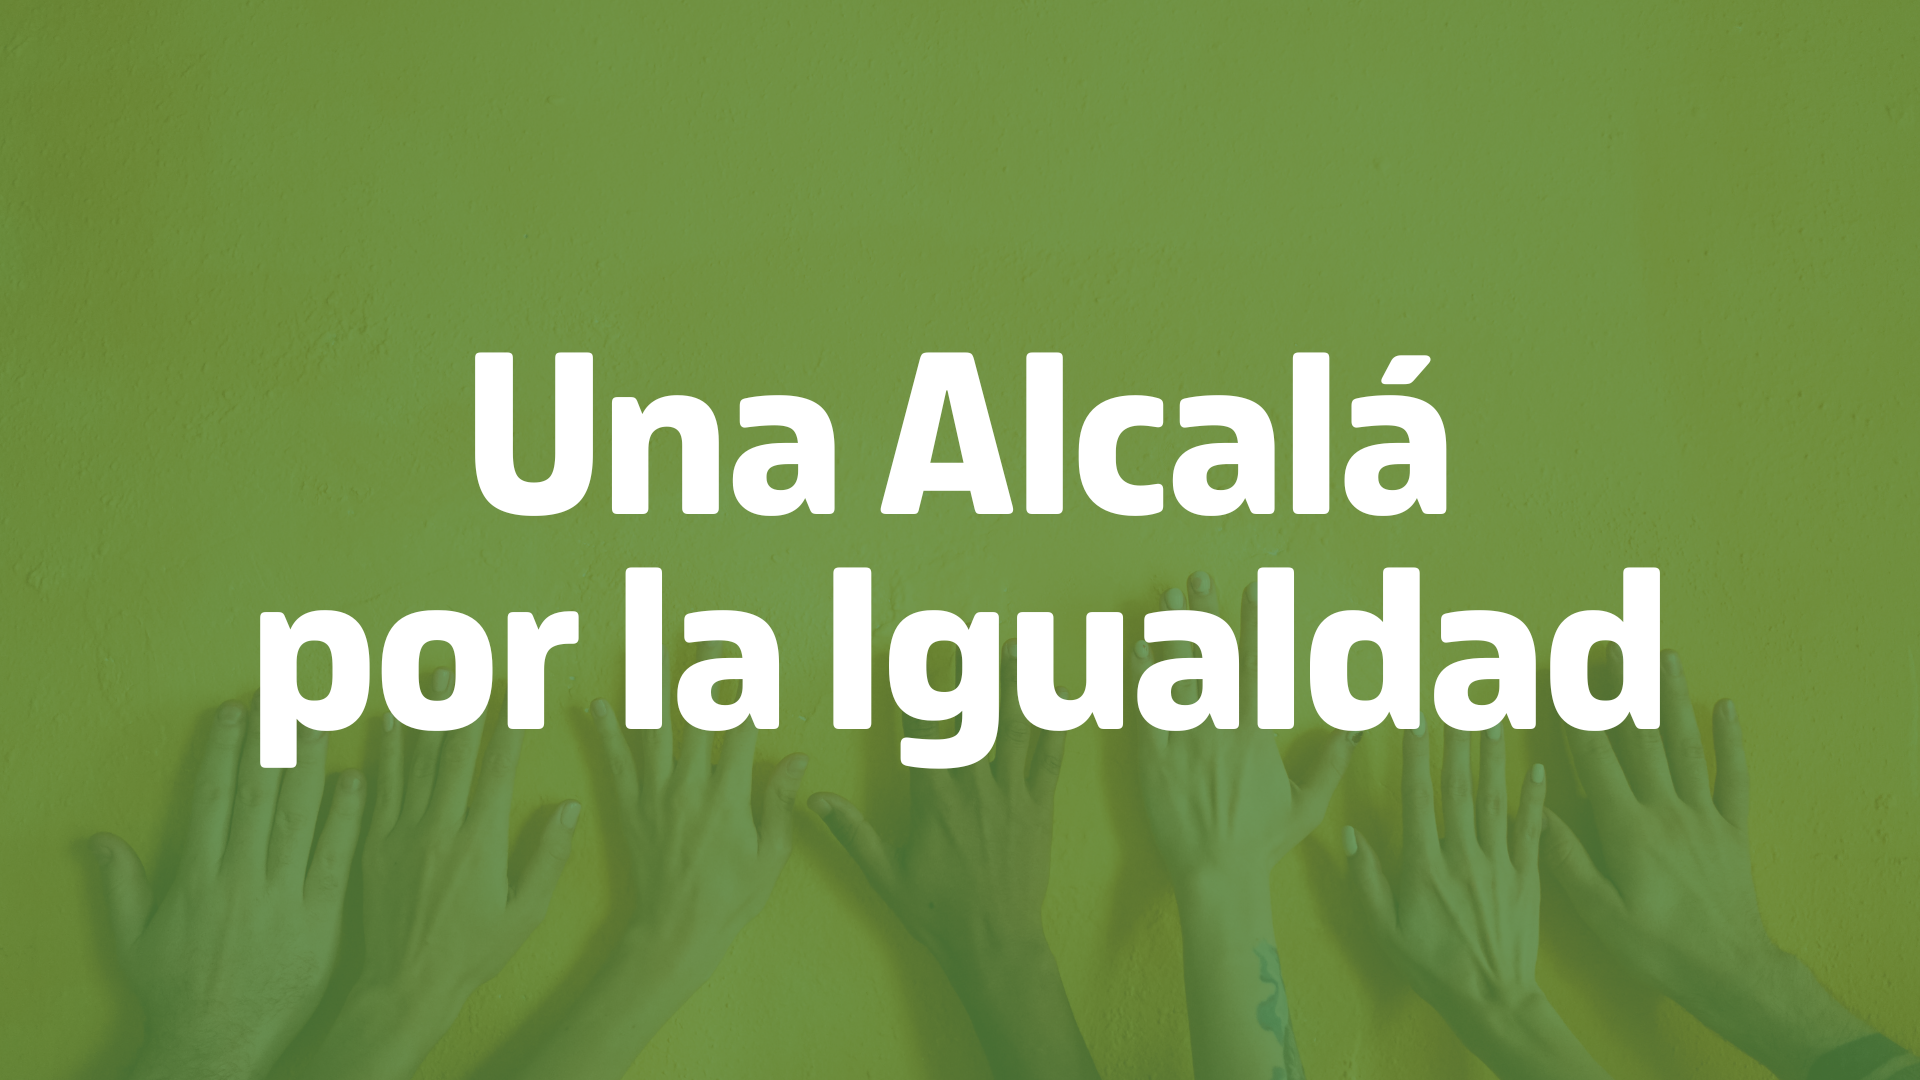 7. Una Alcalá por la Igualdad